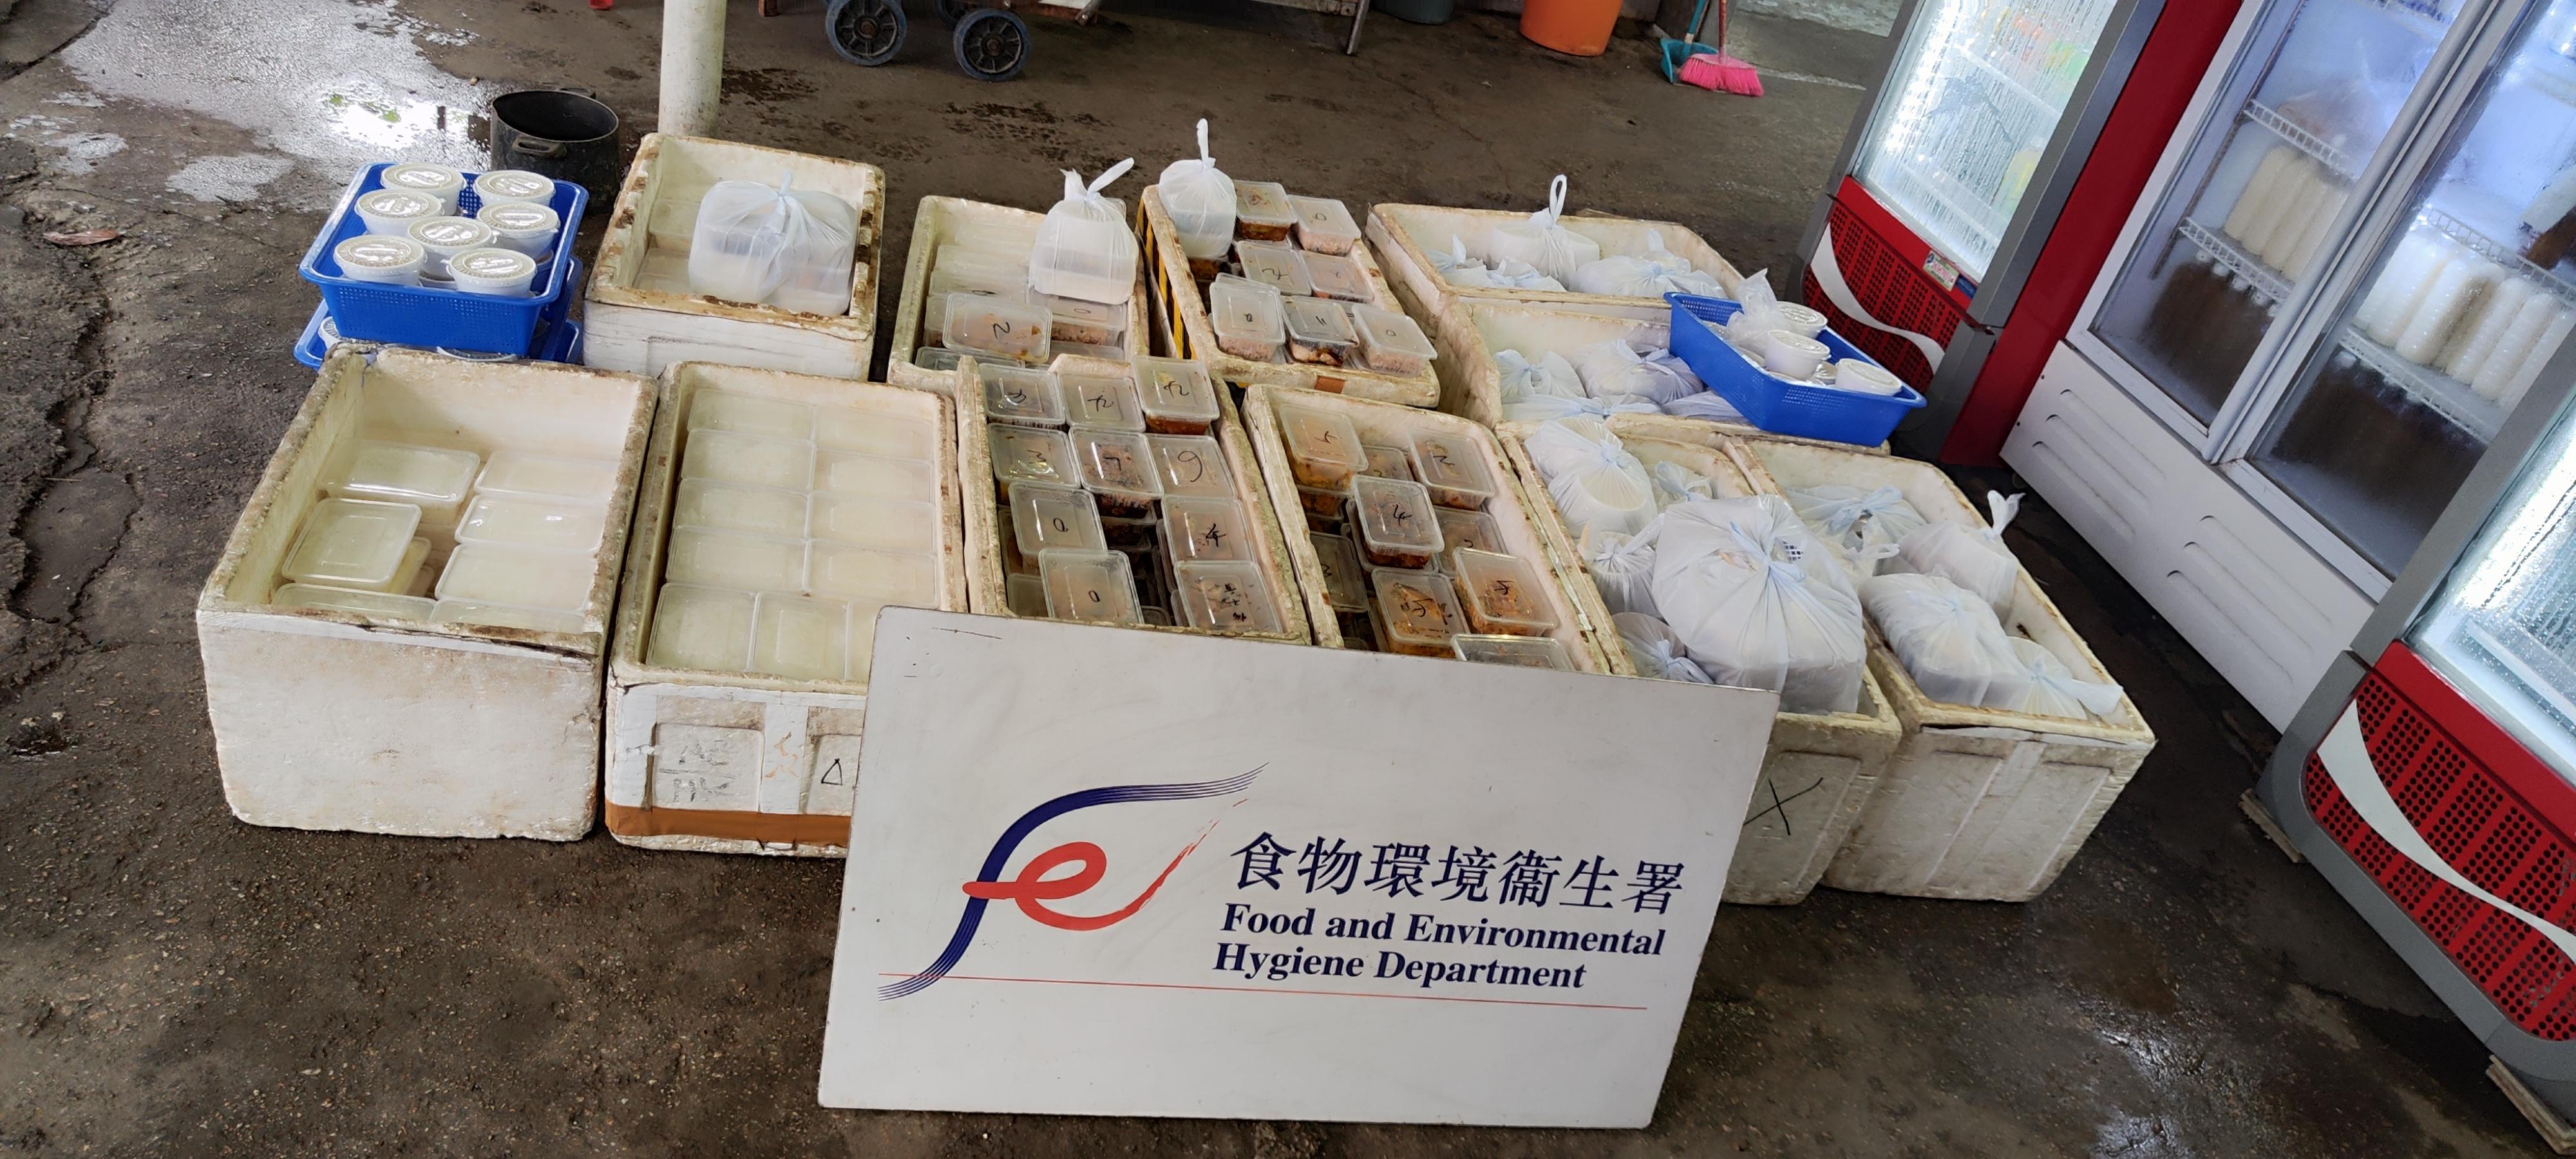 食物环境卫生署及香港警务处今早（四月二十一日）采取联合行动，在西贡区大涌口村捣破一无牌食物制造工场。图示行动中检获的食物。